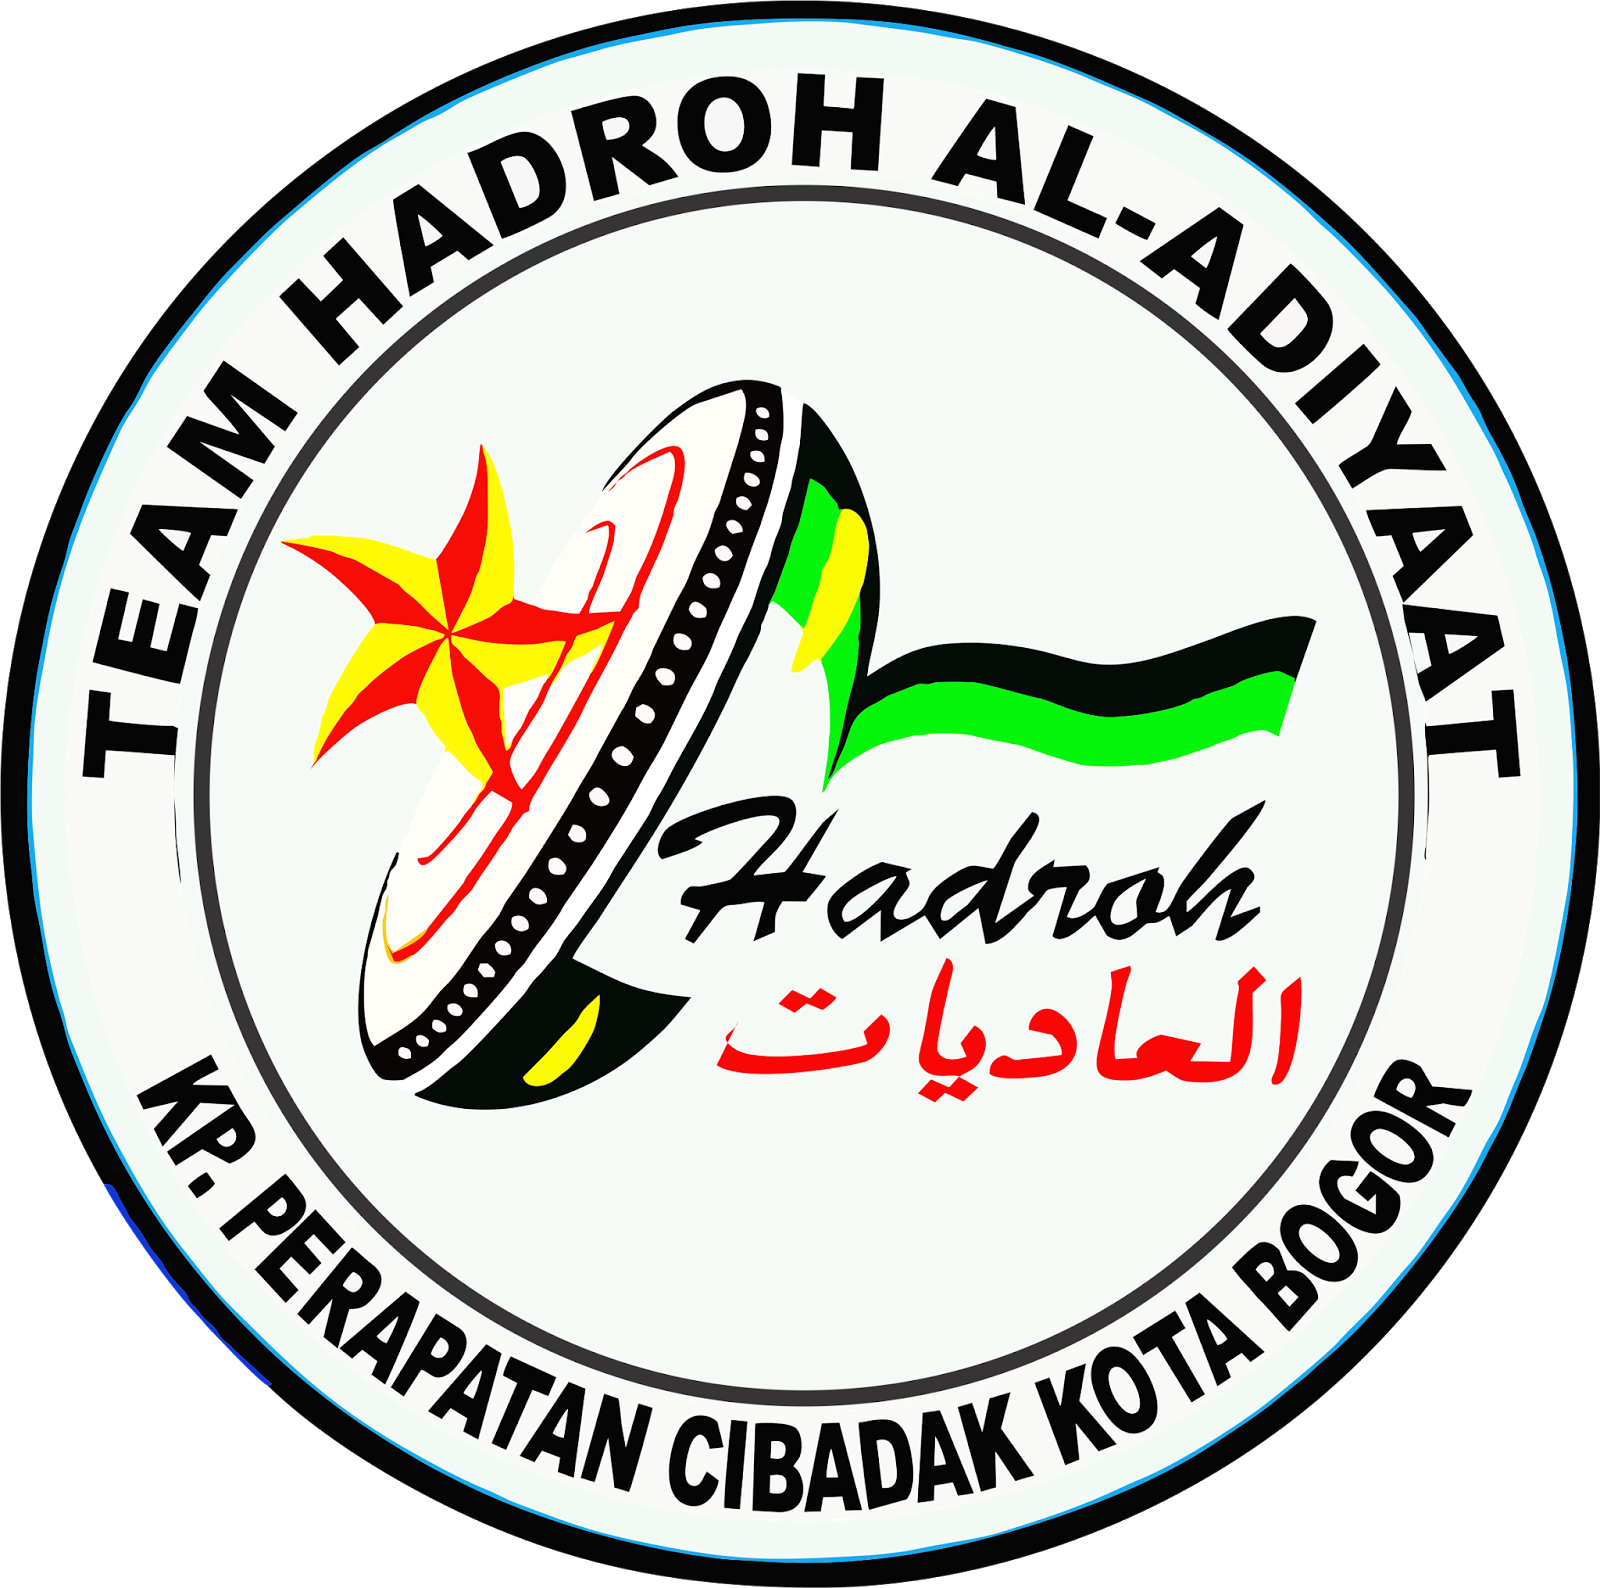  Hadroh  Al Adiyaat Logo  Al Adiyaat